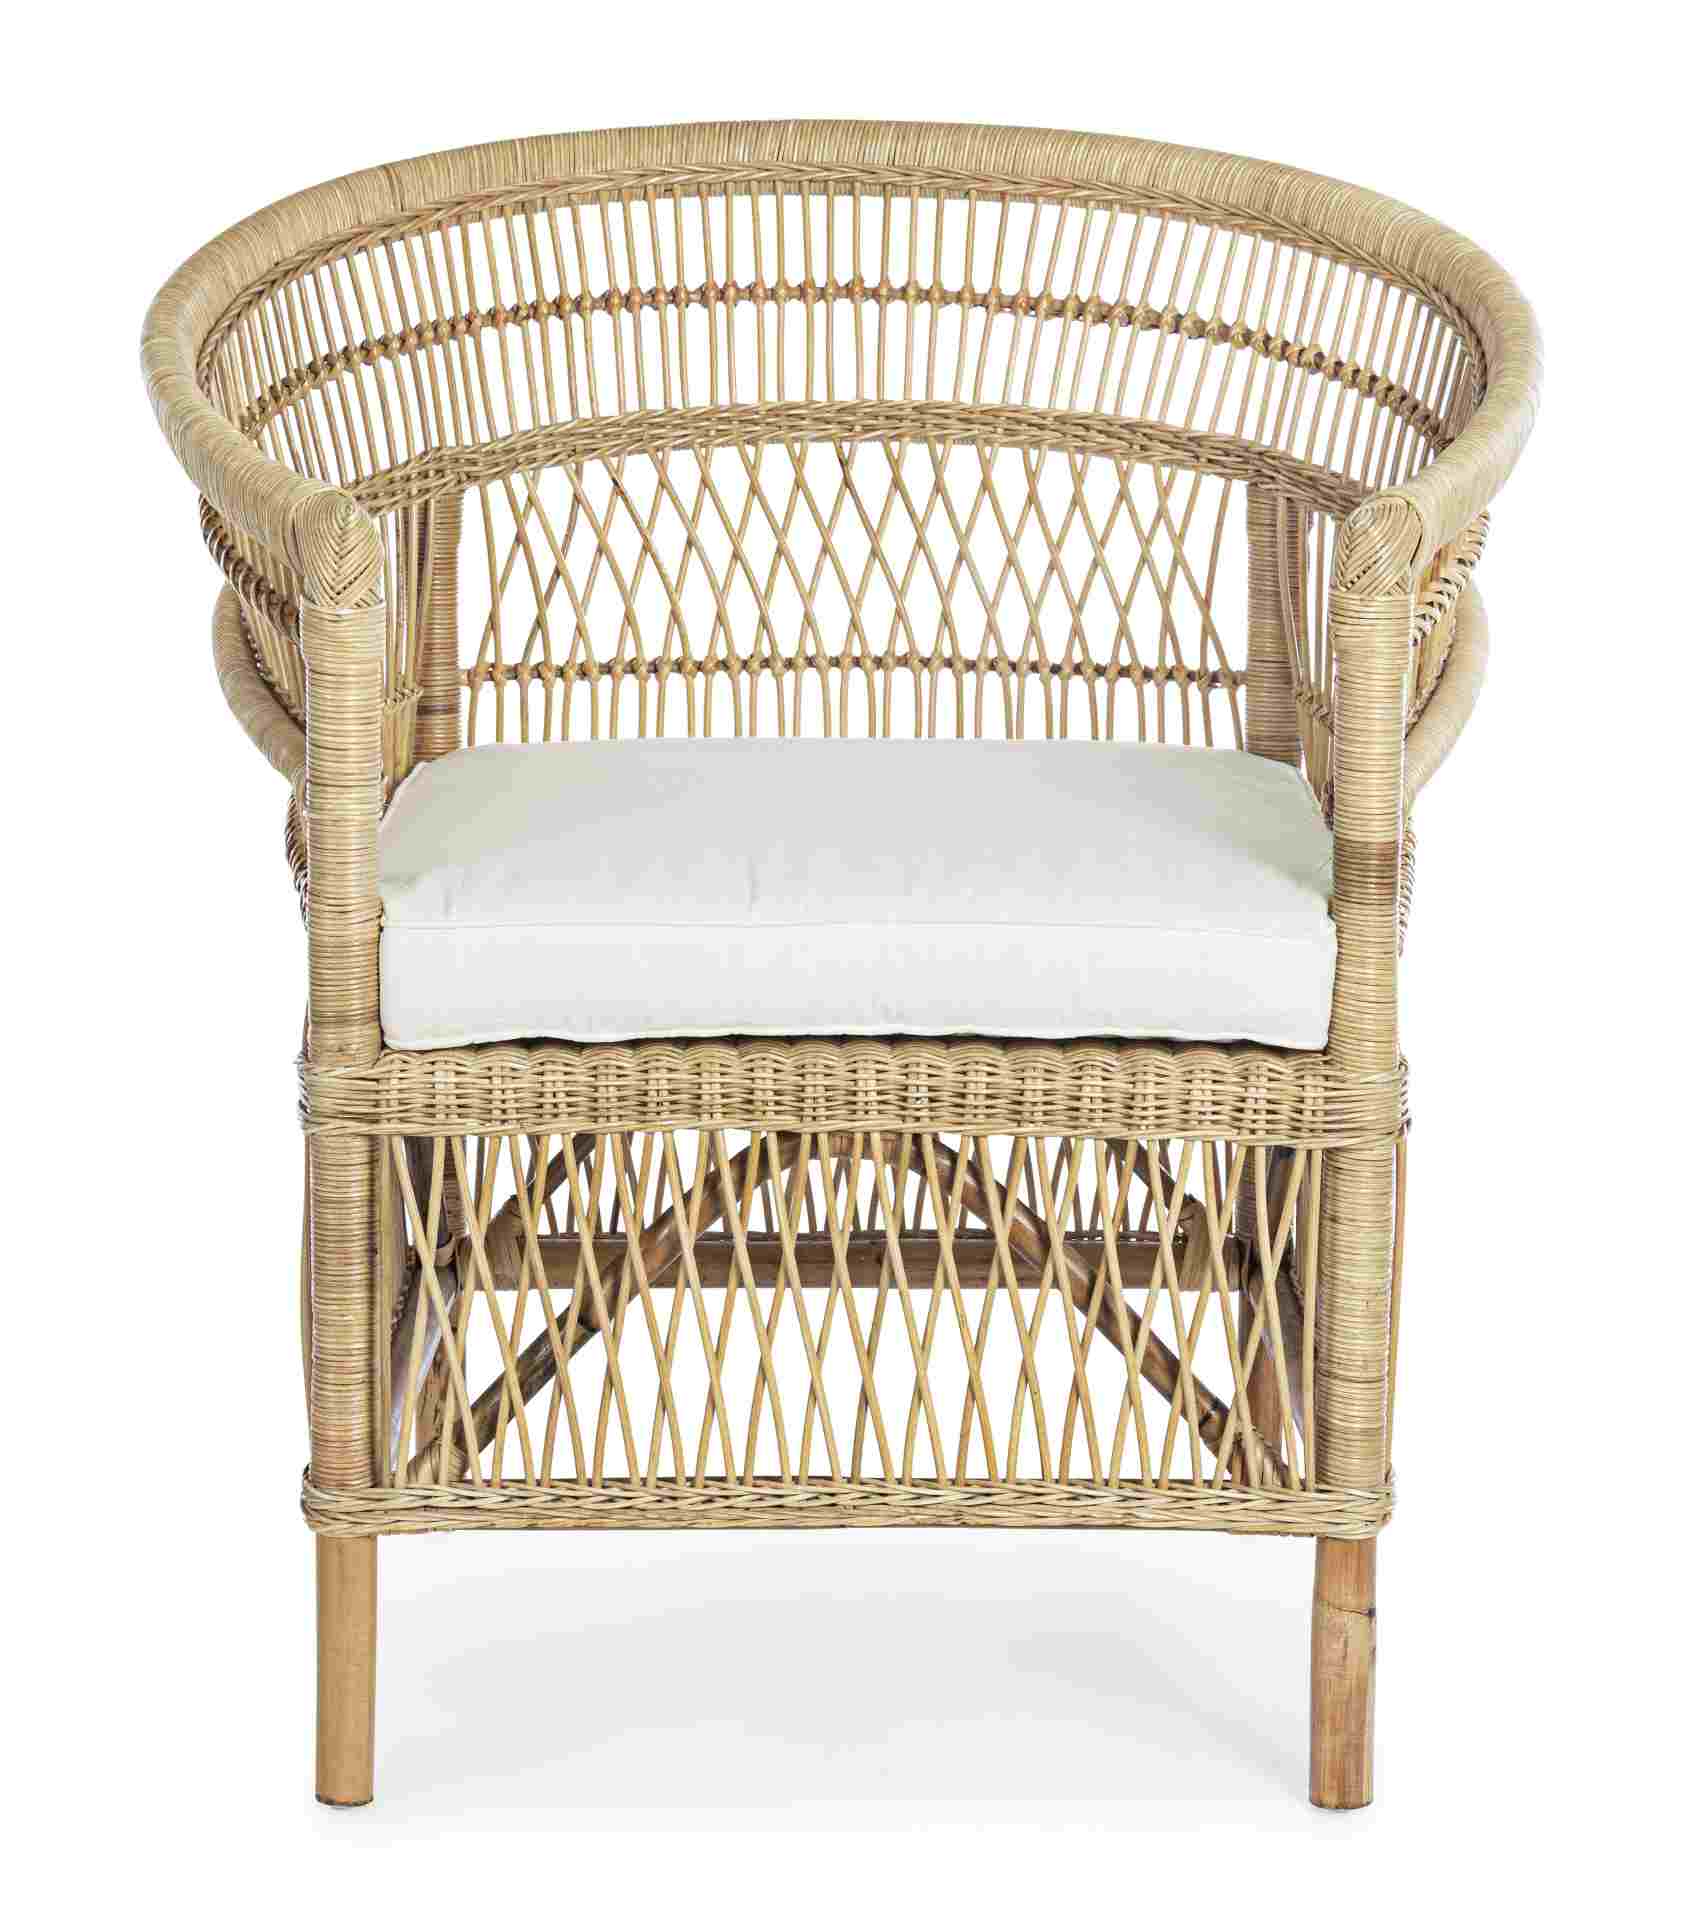 Der Sessel Josefina überzeugt mit seinem klassischen Design. Gefertigt wurde er aus Rattan, welches einen natürlichen Farbton besitzt. Das Gestell ist auch aus Rattan. Der Sessel besitzt eine Sitzhöhe von 41 cm. Die Breite beträgt 79 cm.